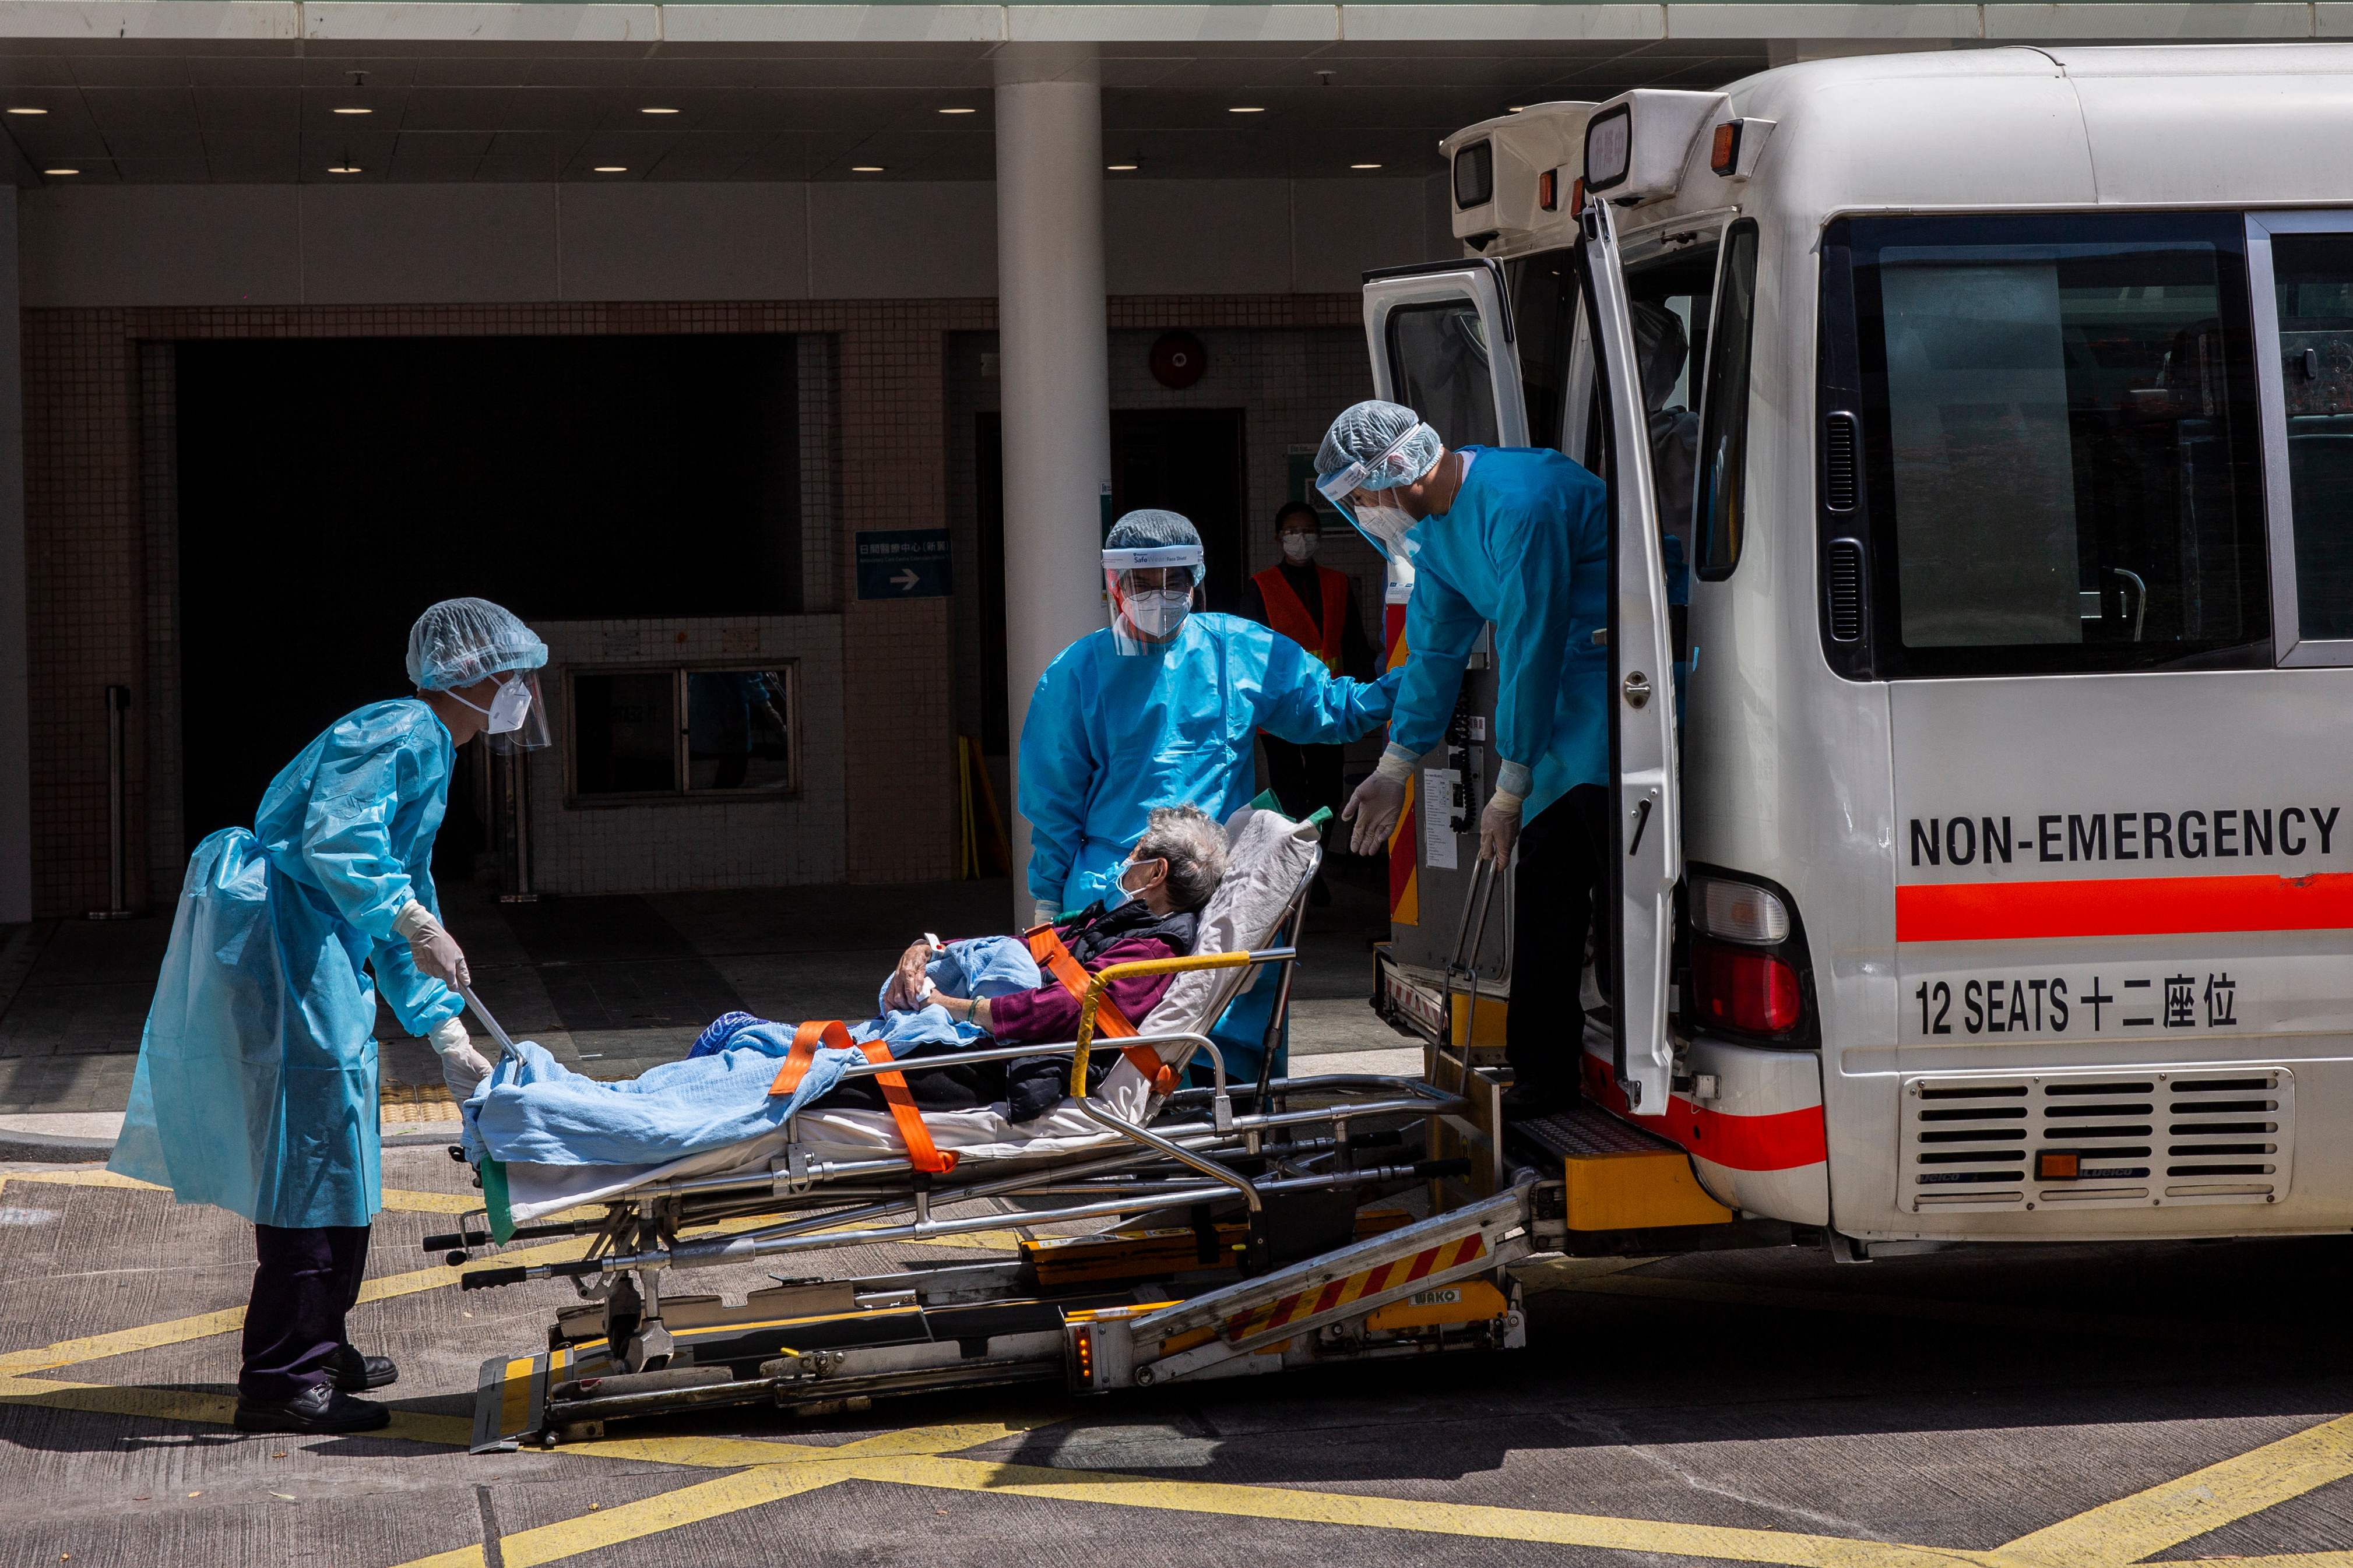 Varios hospitales, incluido el Queen Elizabeth Hospital en Hong Kong, se destinaron exclusivamente para tratar a pacientes de covid-19